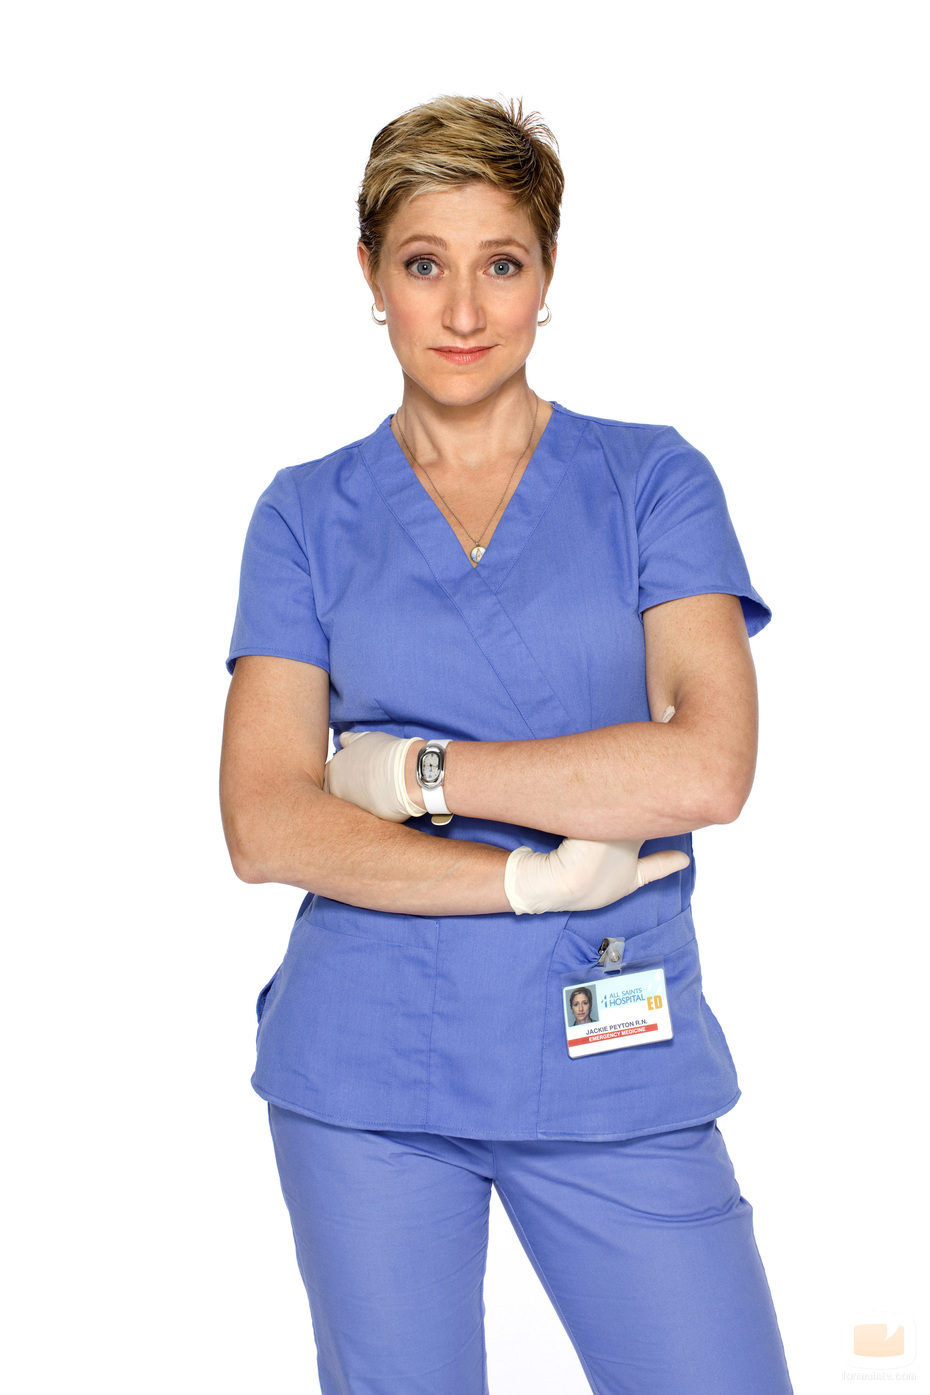 Edie Falco es Nurse Jackie